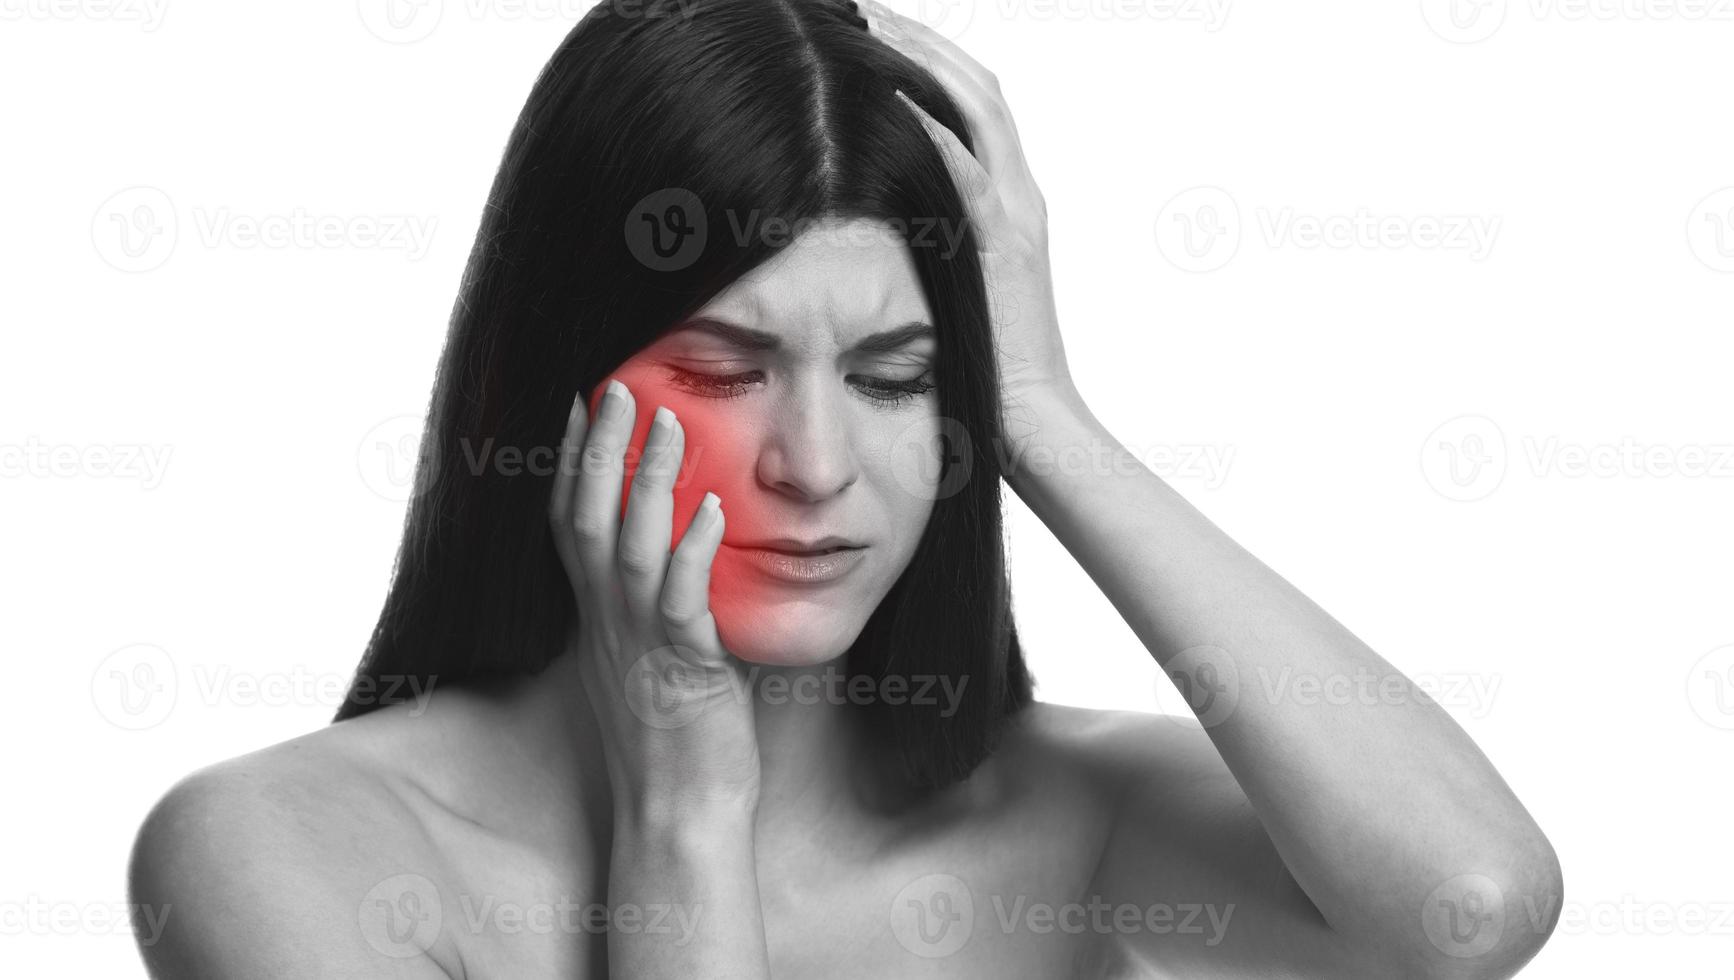 zwart en wit foto van een vrouw met kiespijn. kiespijn verlichten met rood.